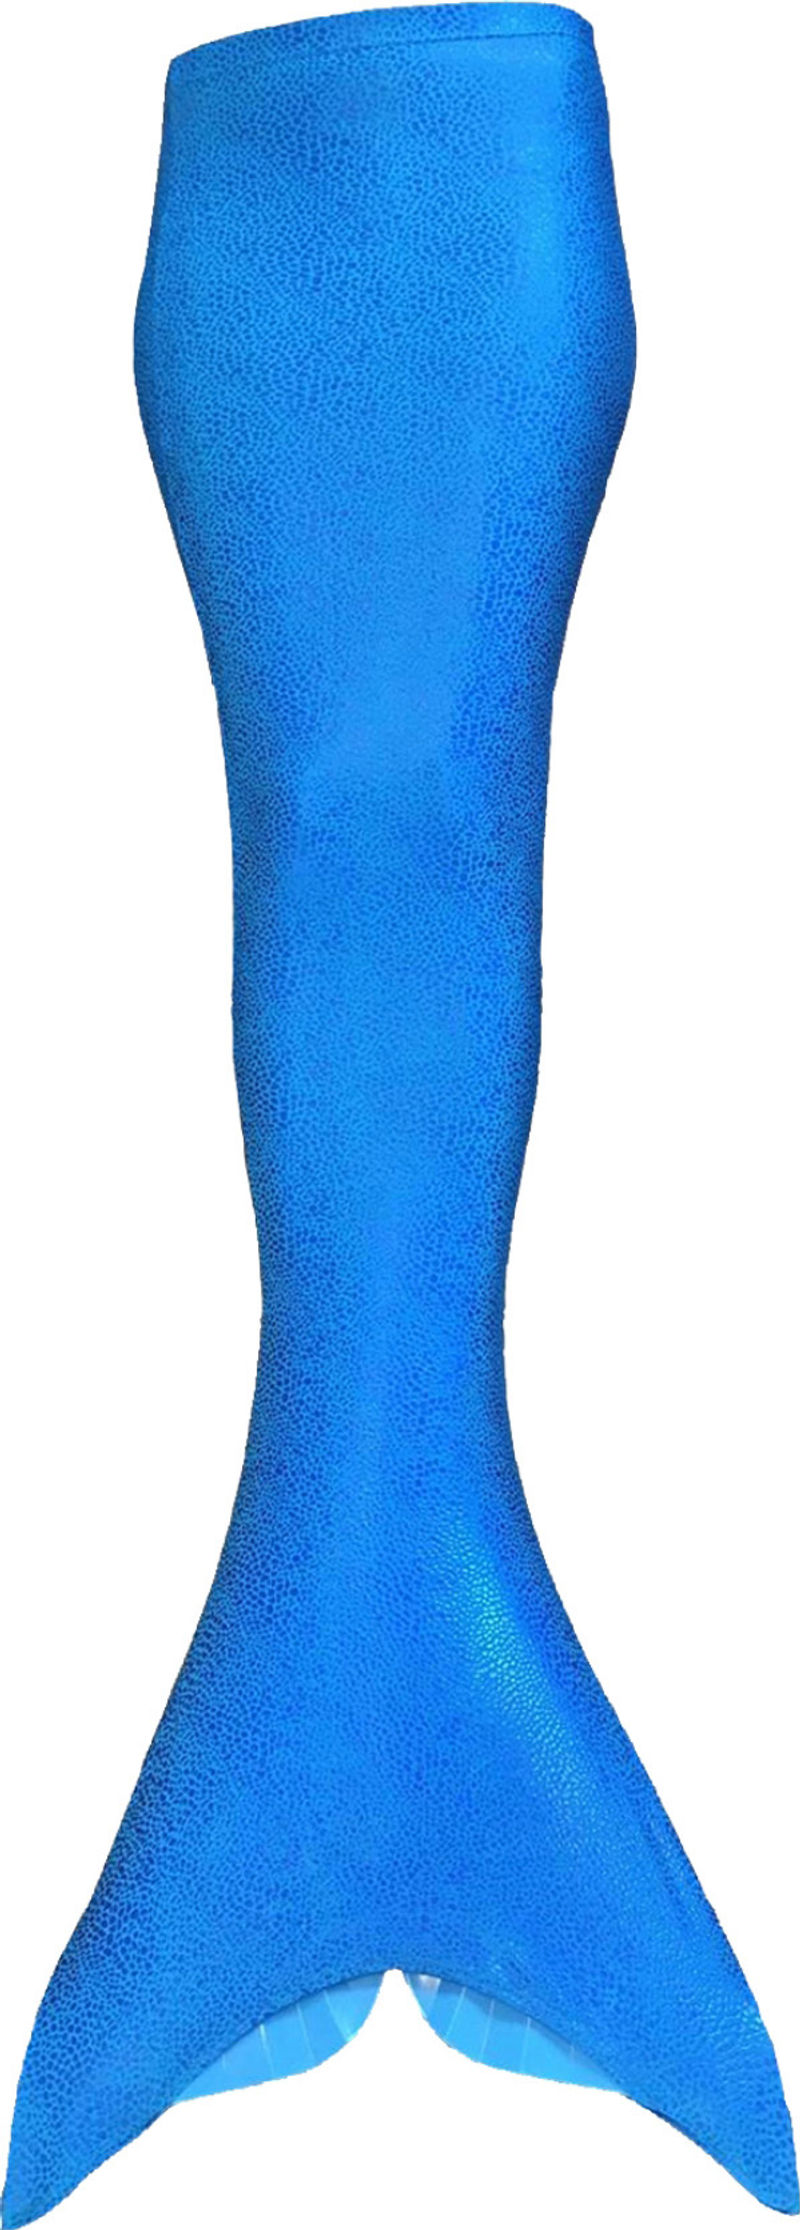 Aquatail - Flosse für Meerjungfrauen blau bestellen | Weltbild.at